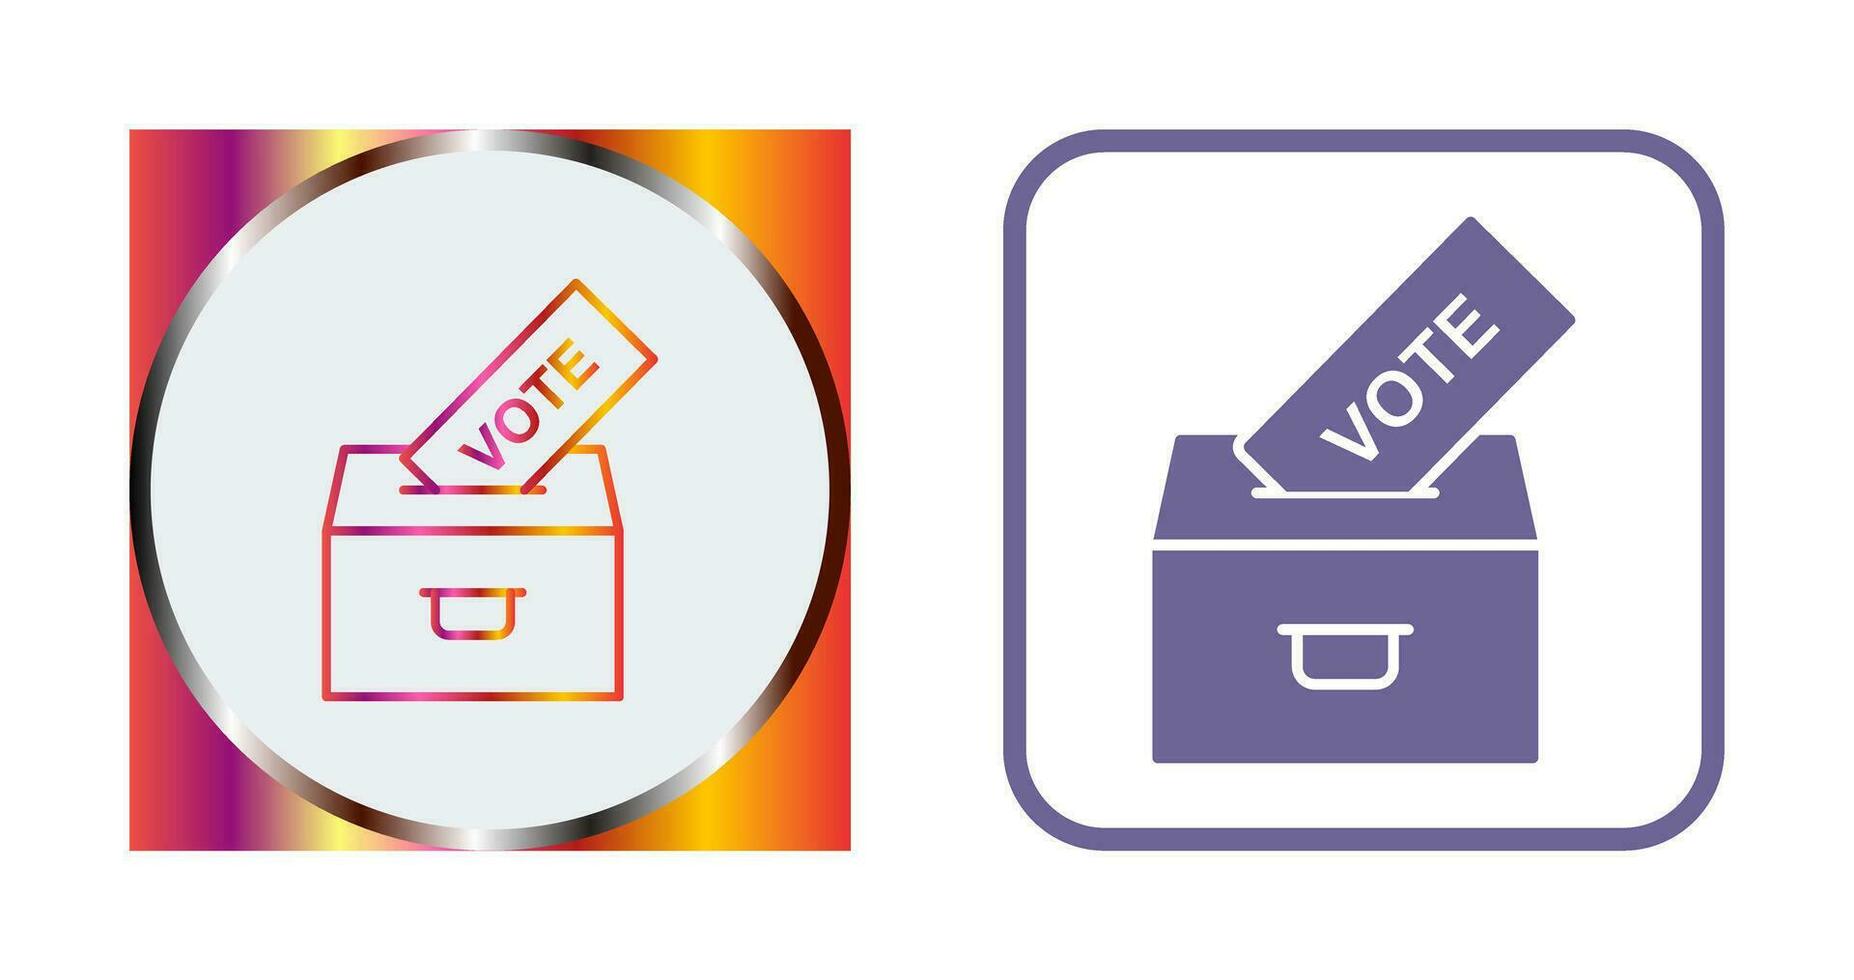 Casting Vote Vector Icon